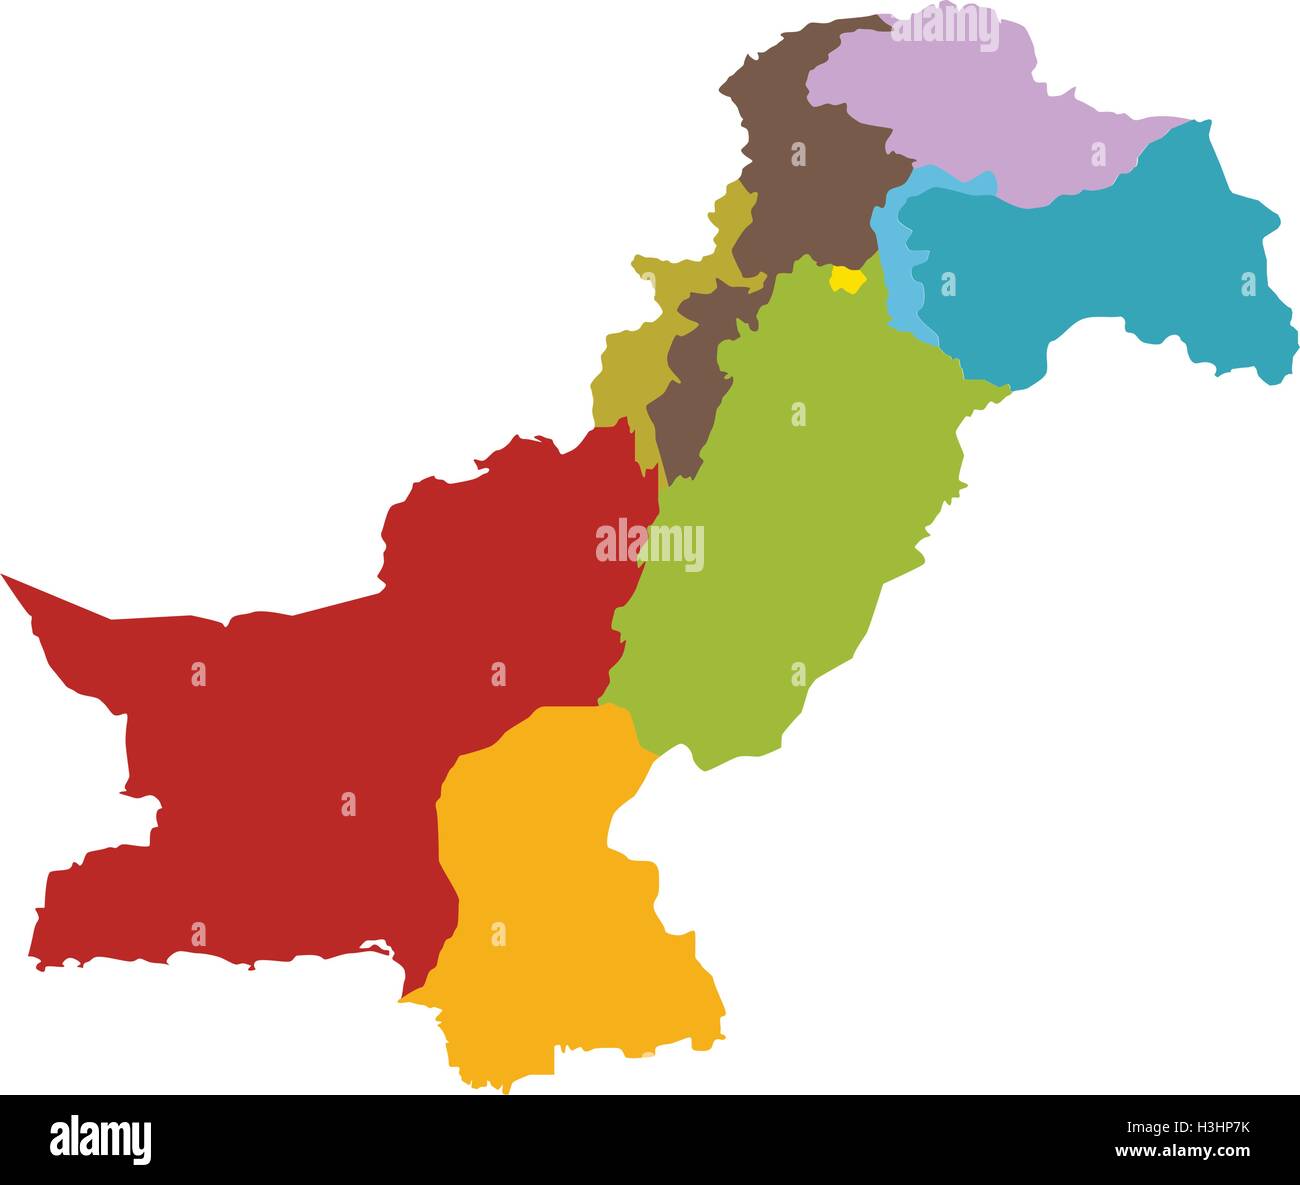 Pakistan mappa con tutti gli stati e province Illustrazione Vettoriale